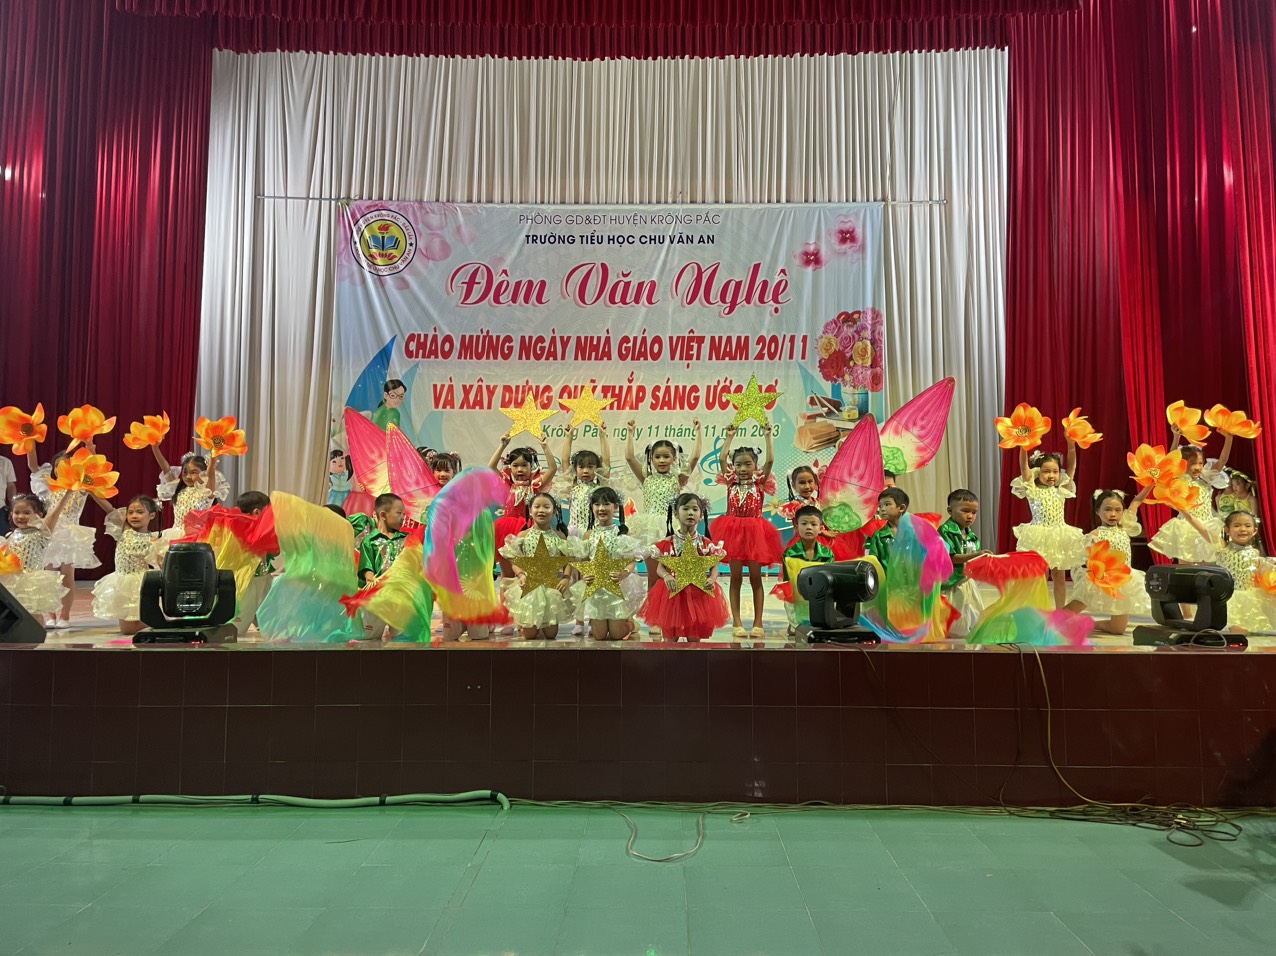 Trường TH Chu Văn An tổ chức  Đêm văn nghệ chào mừng ngày Nhà giáo Việt Nam 20/11 và xây dựng quỹ “Thắp sáng ước mơ"